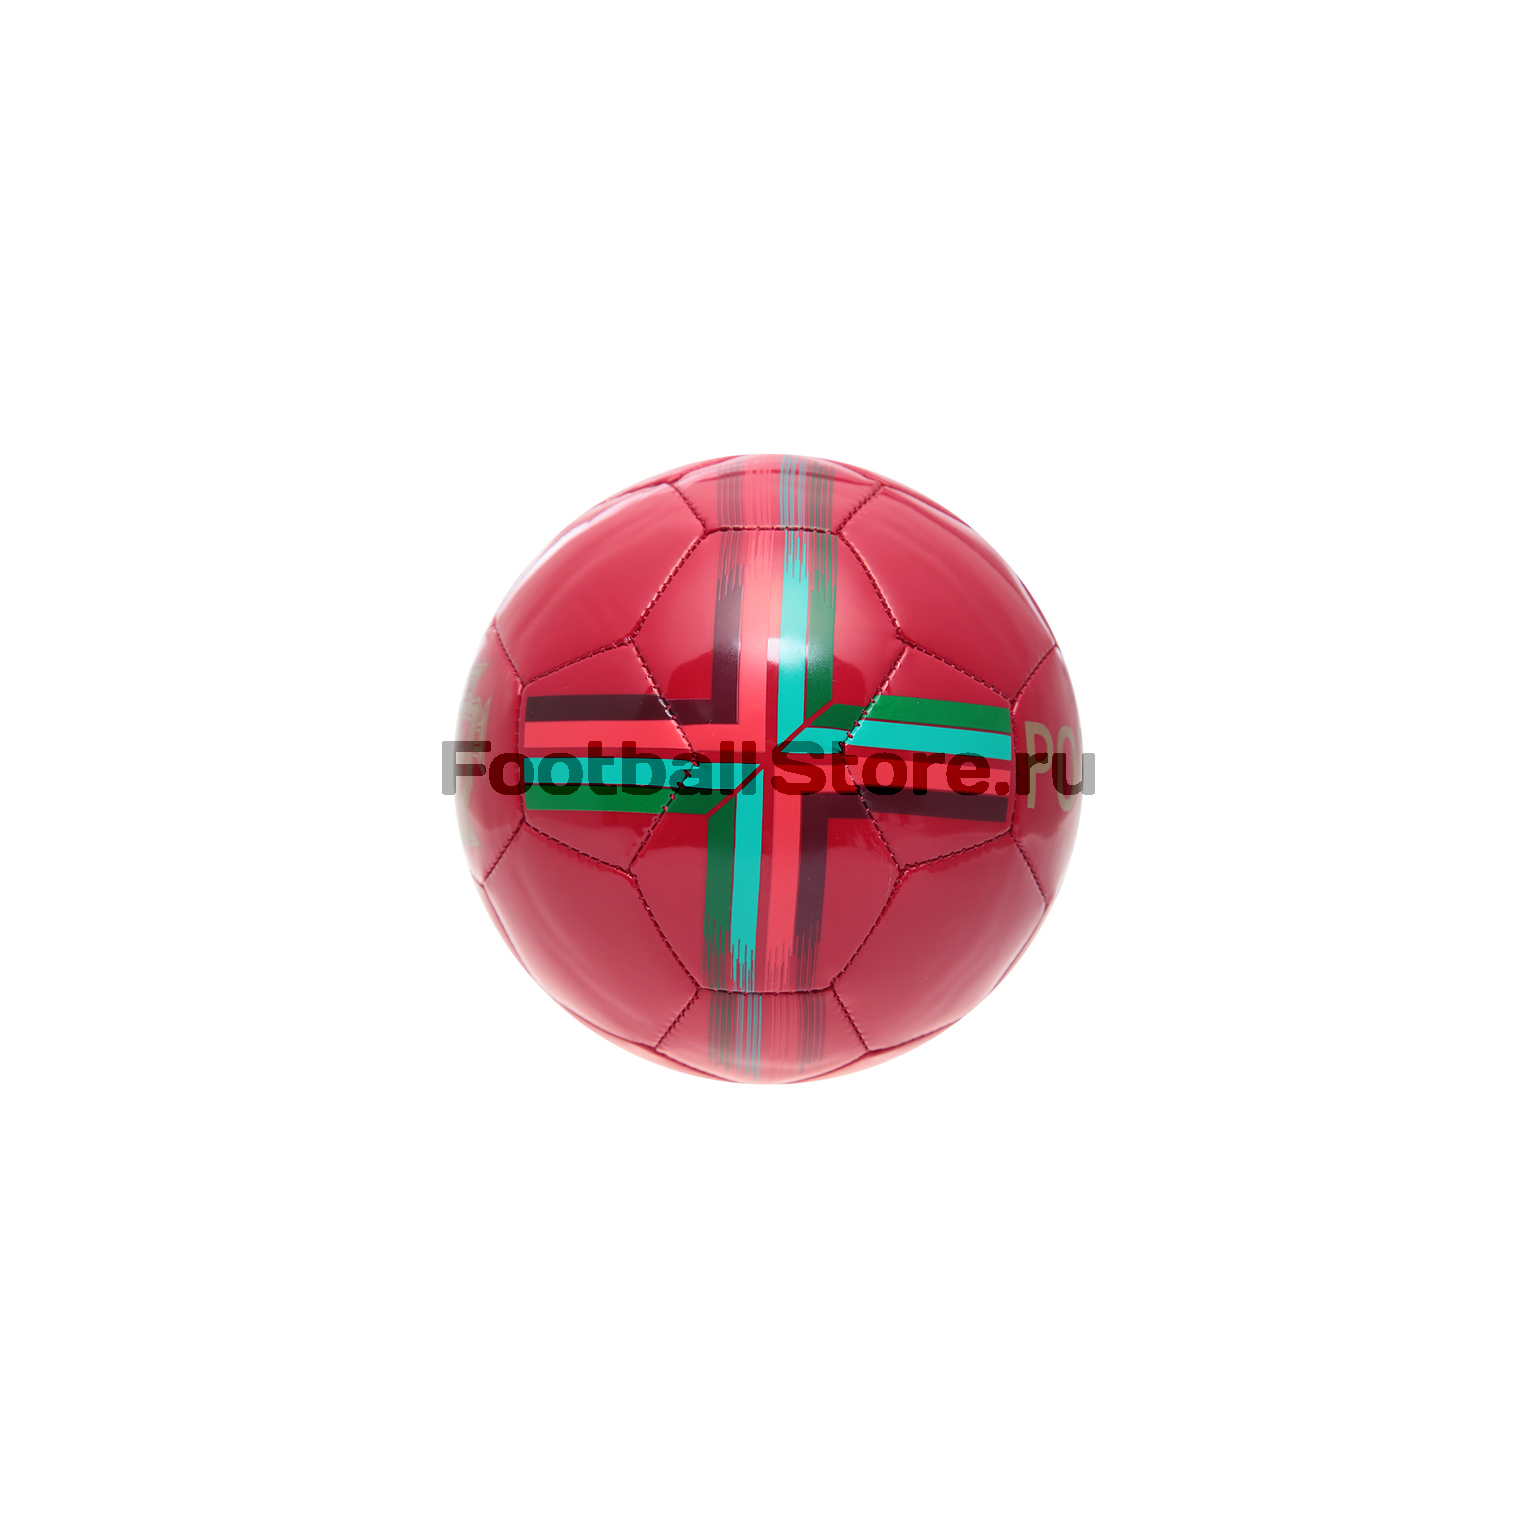 Футбольный сувенирный мяч Nike сб. Португалии SC3220-687